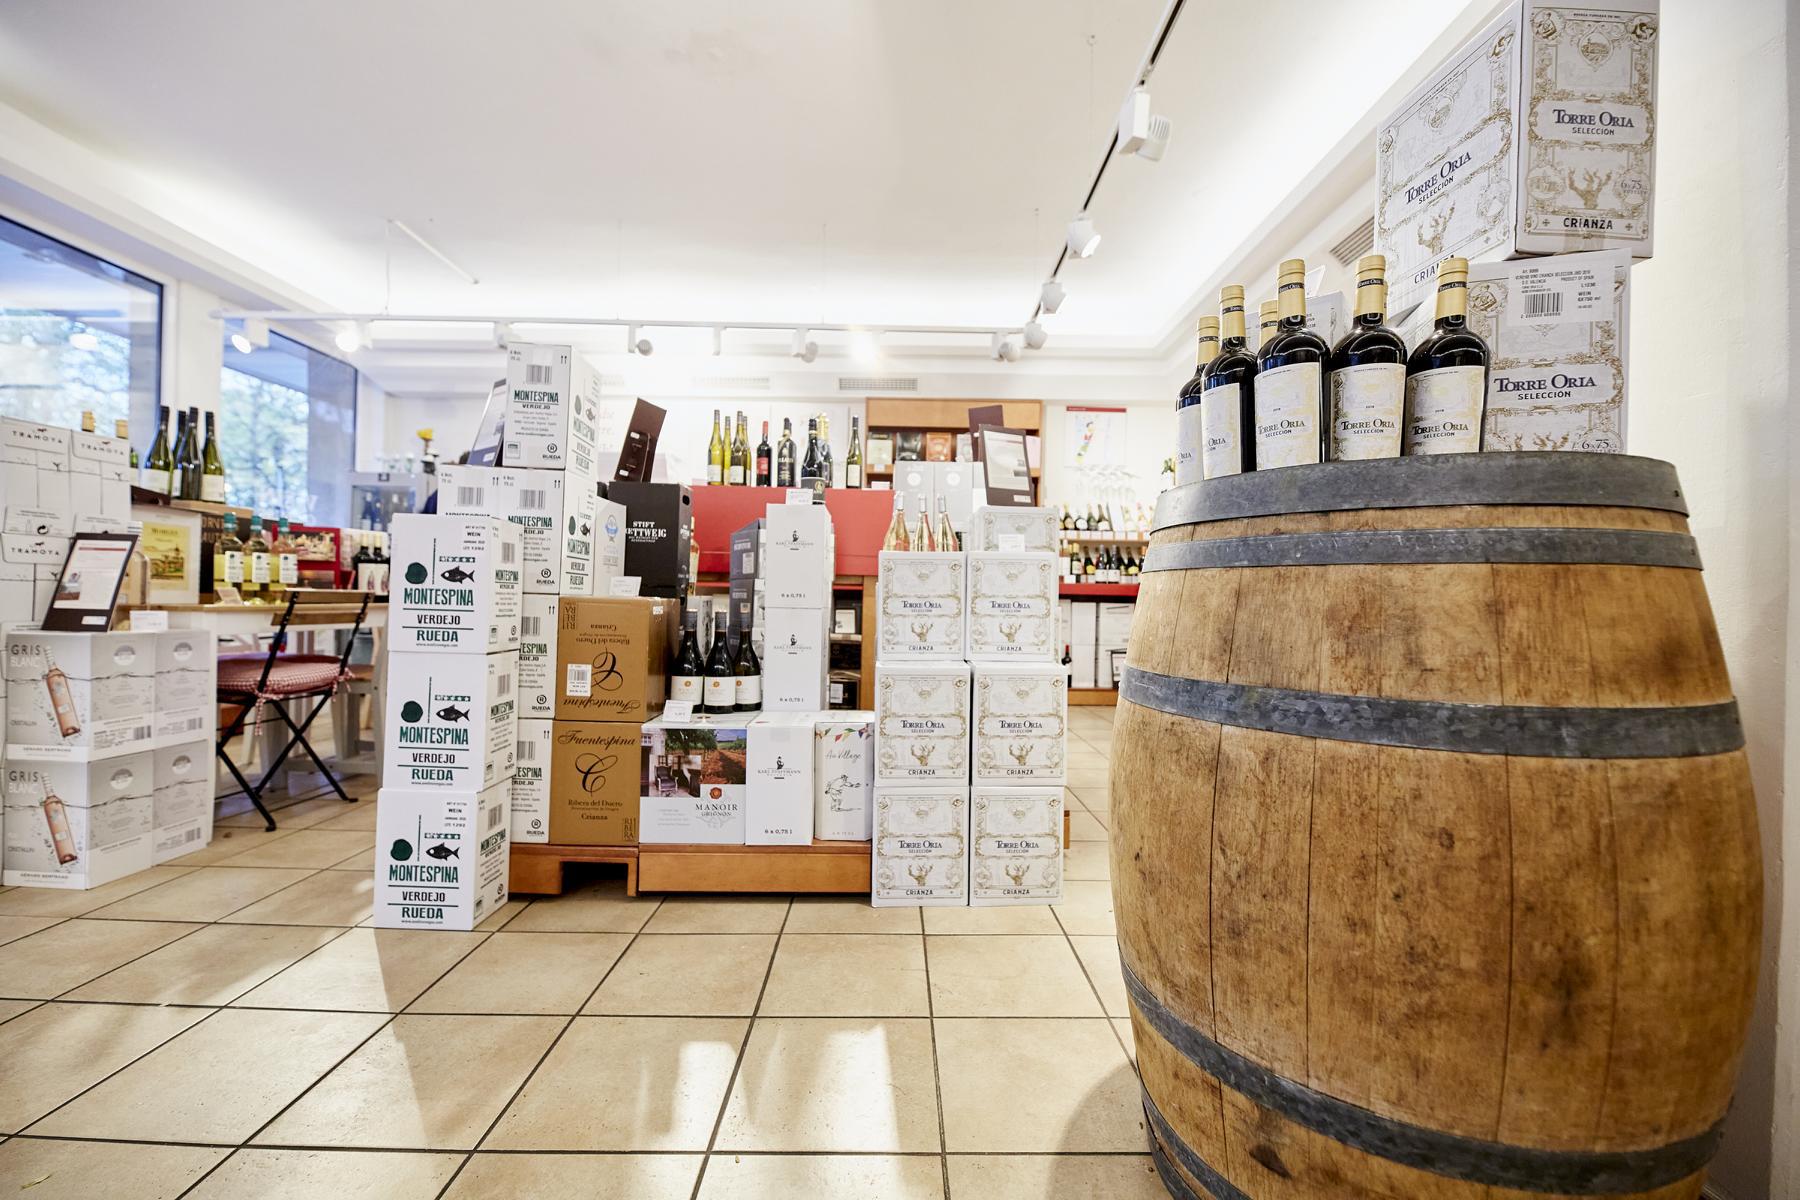 Bilder Jacques’ Wein-Depot Emden